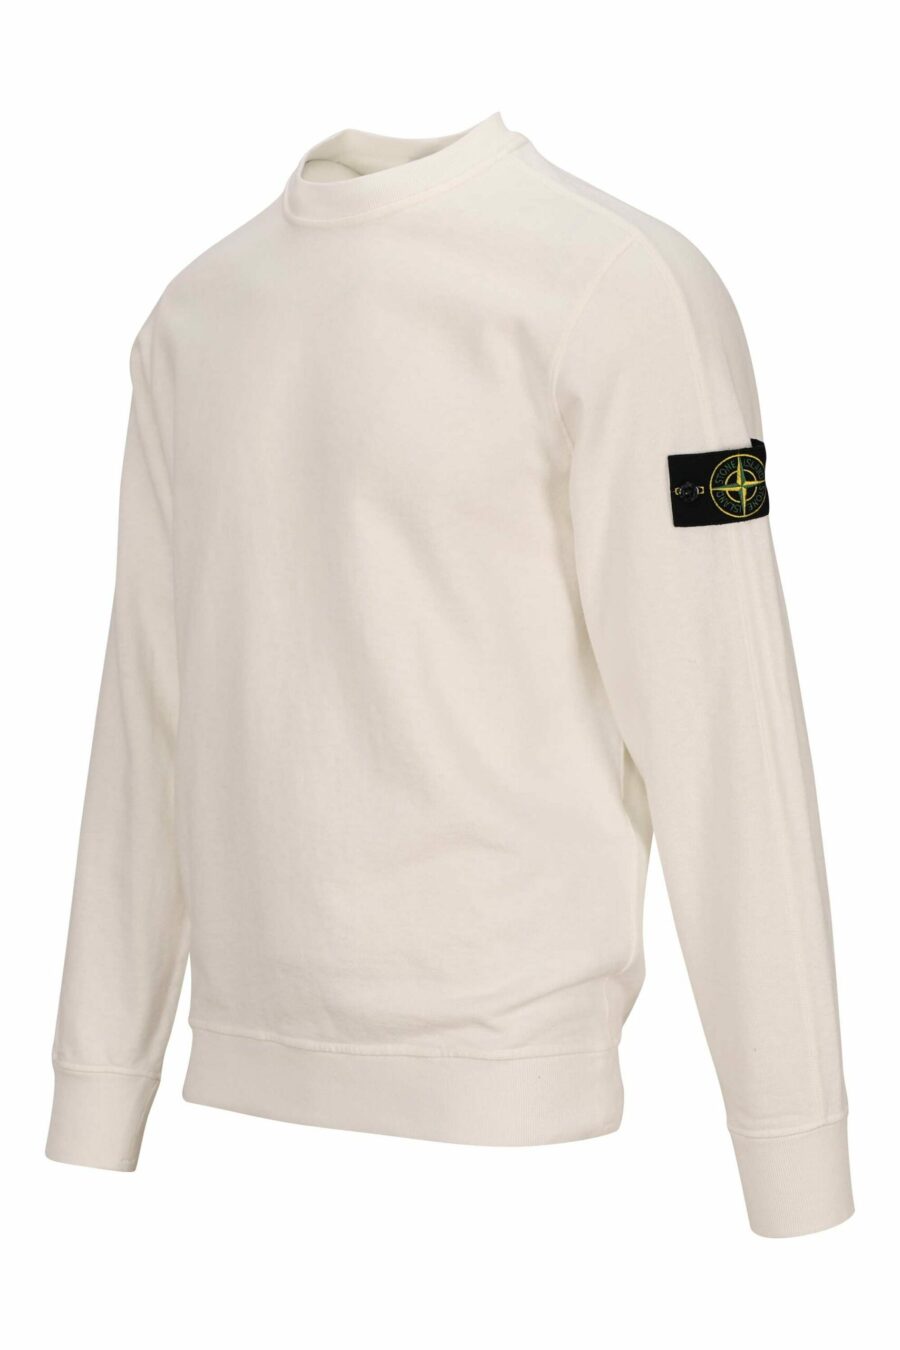 Weißes Sweatshirt mit Logo-Kompass-Aufnäher - 8052572901874 1 skaliert